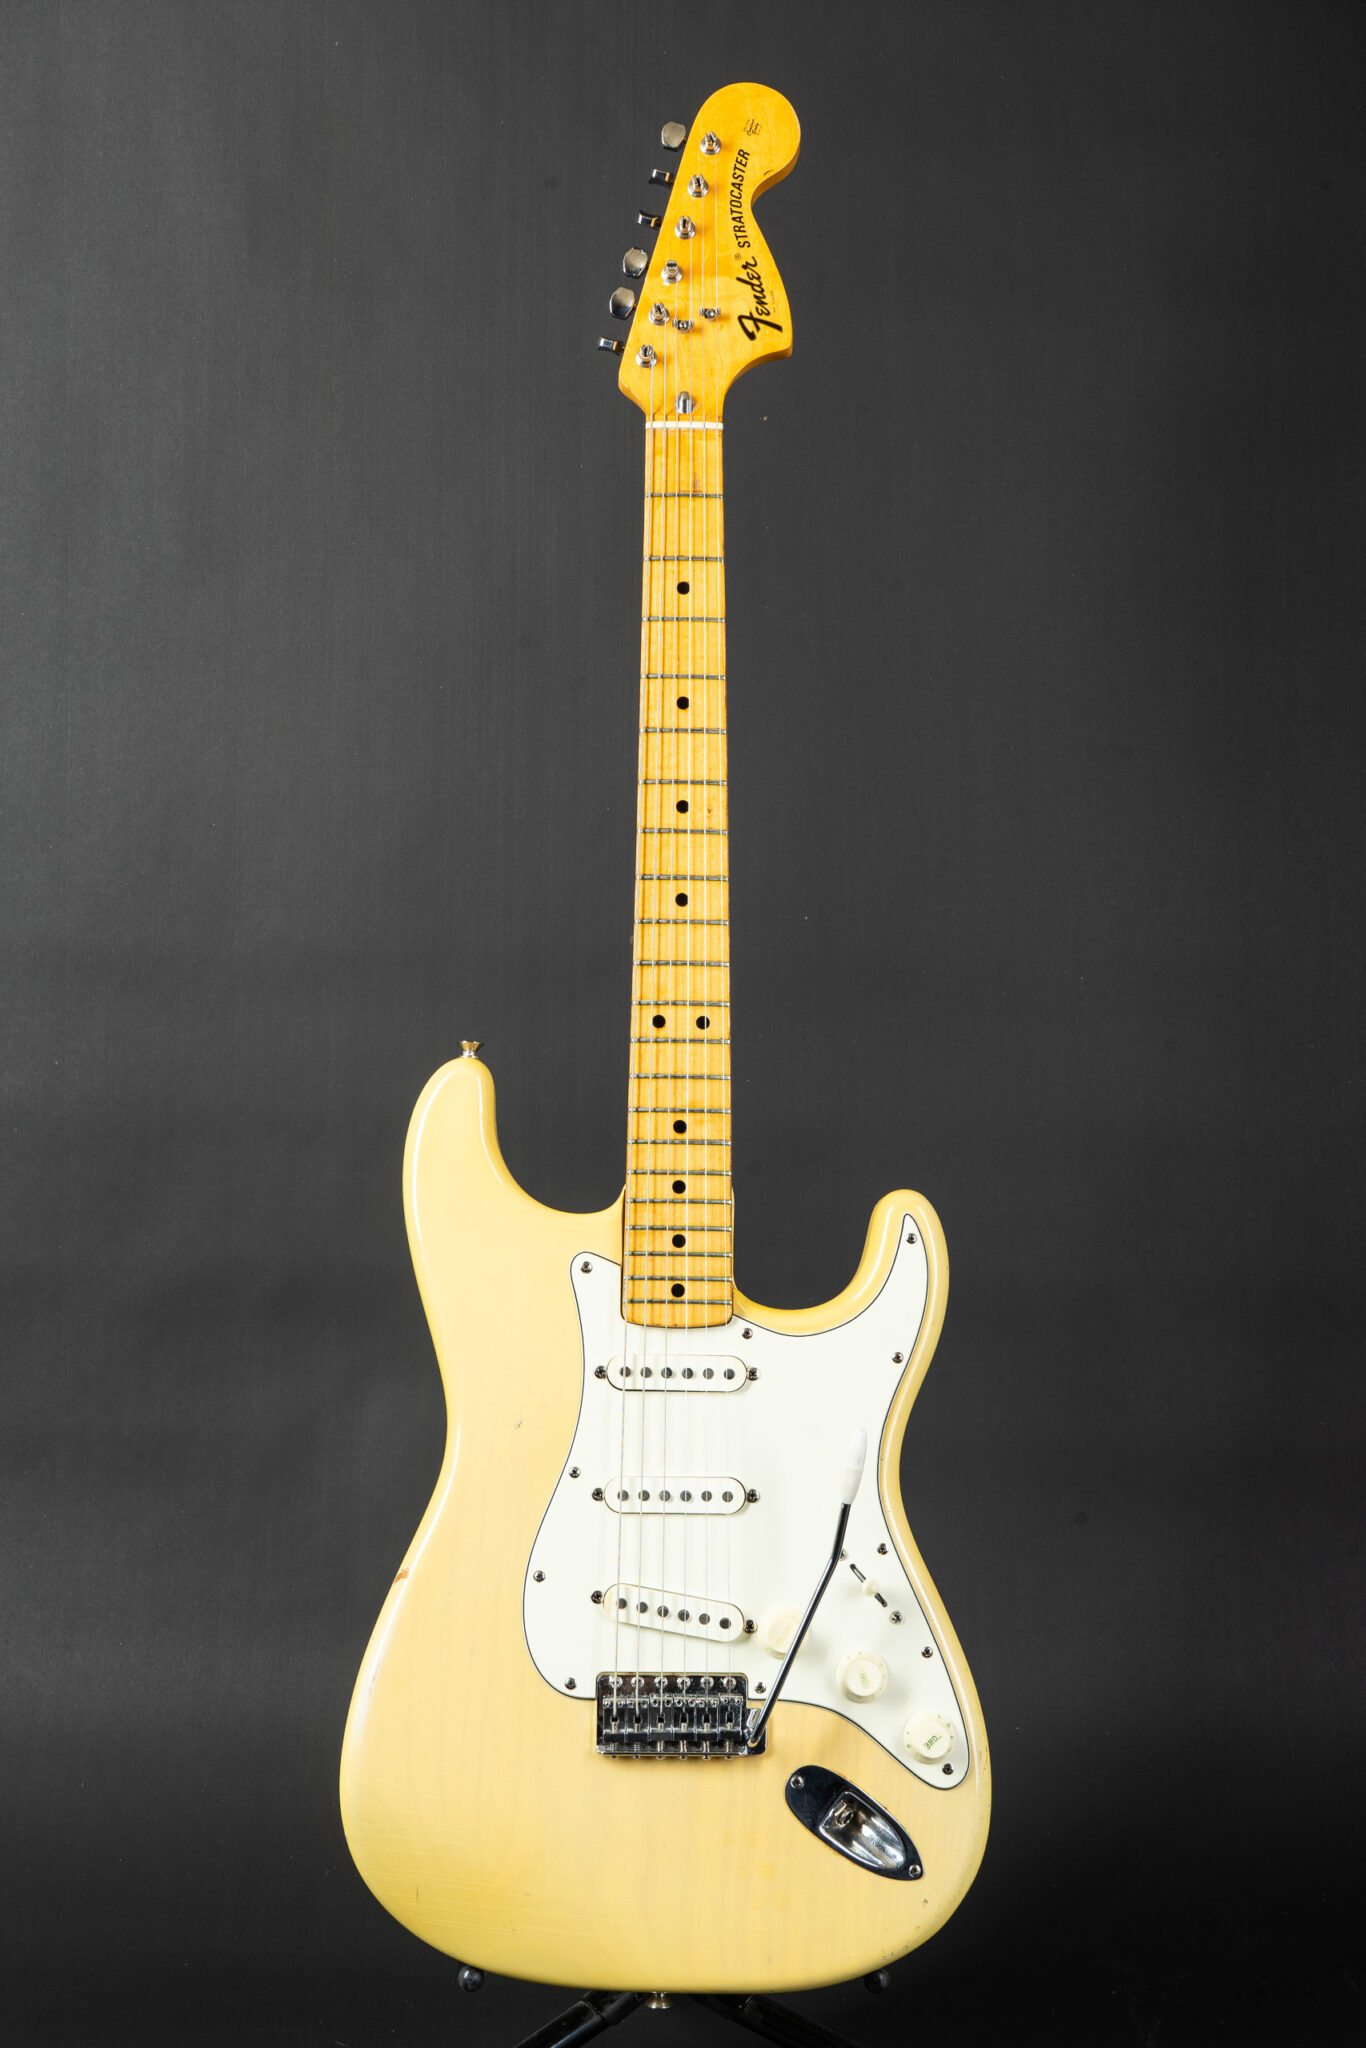 1973-Fender-Stratocaster-Blonde-421809-1-1366x2048.jpg